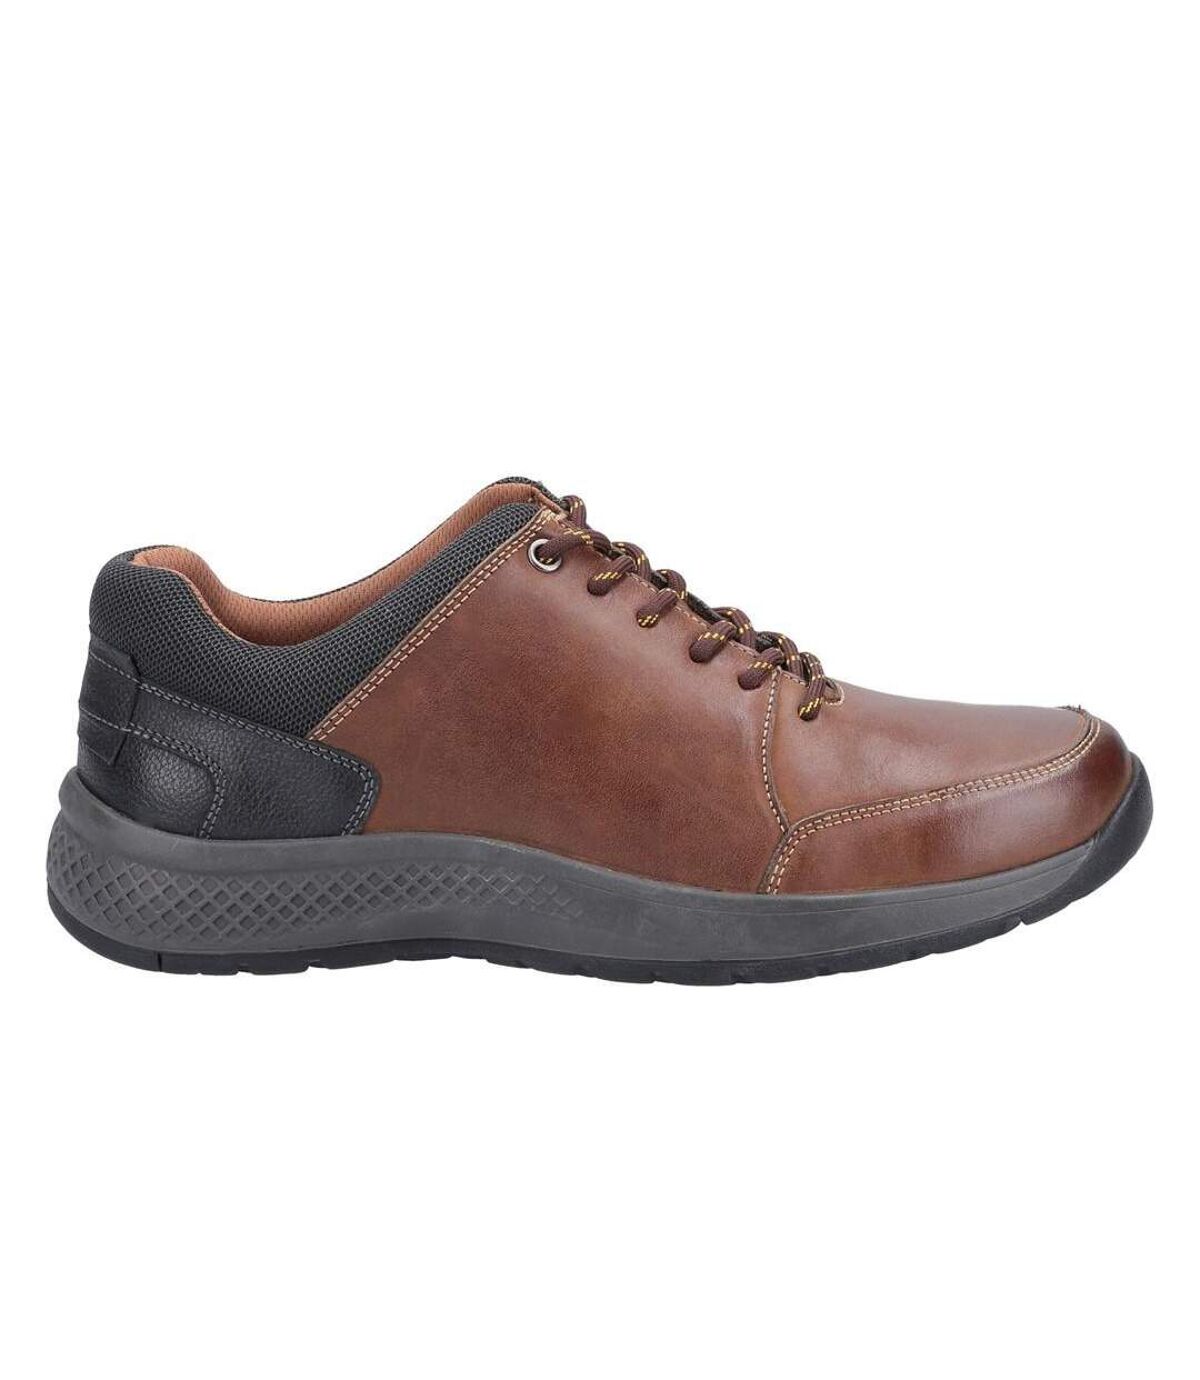 Cotswold - Chaussures décontractées ROLLRIGHT - Homme (Marron) - UTFS7425